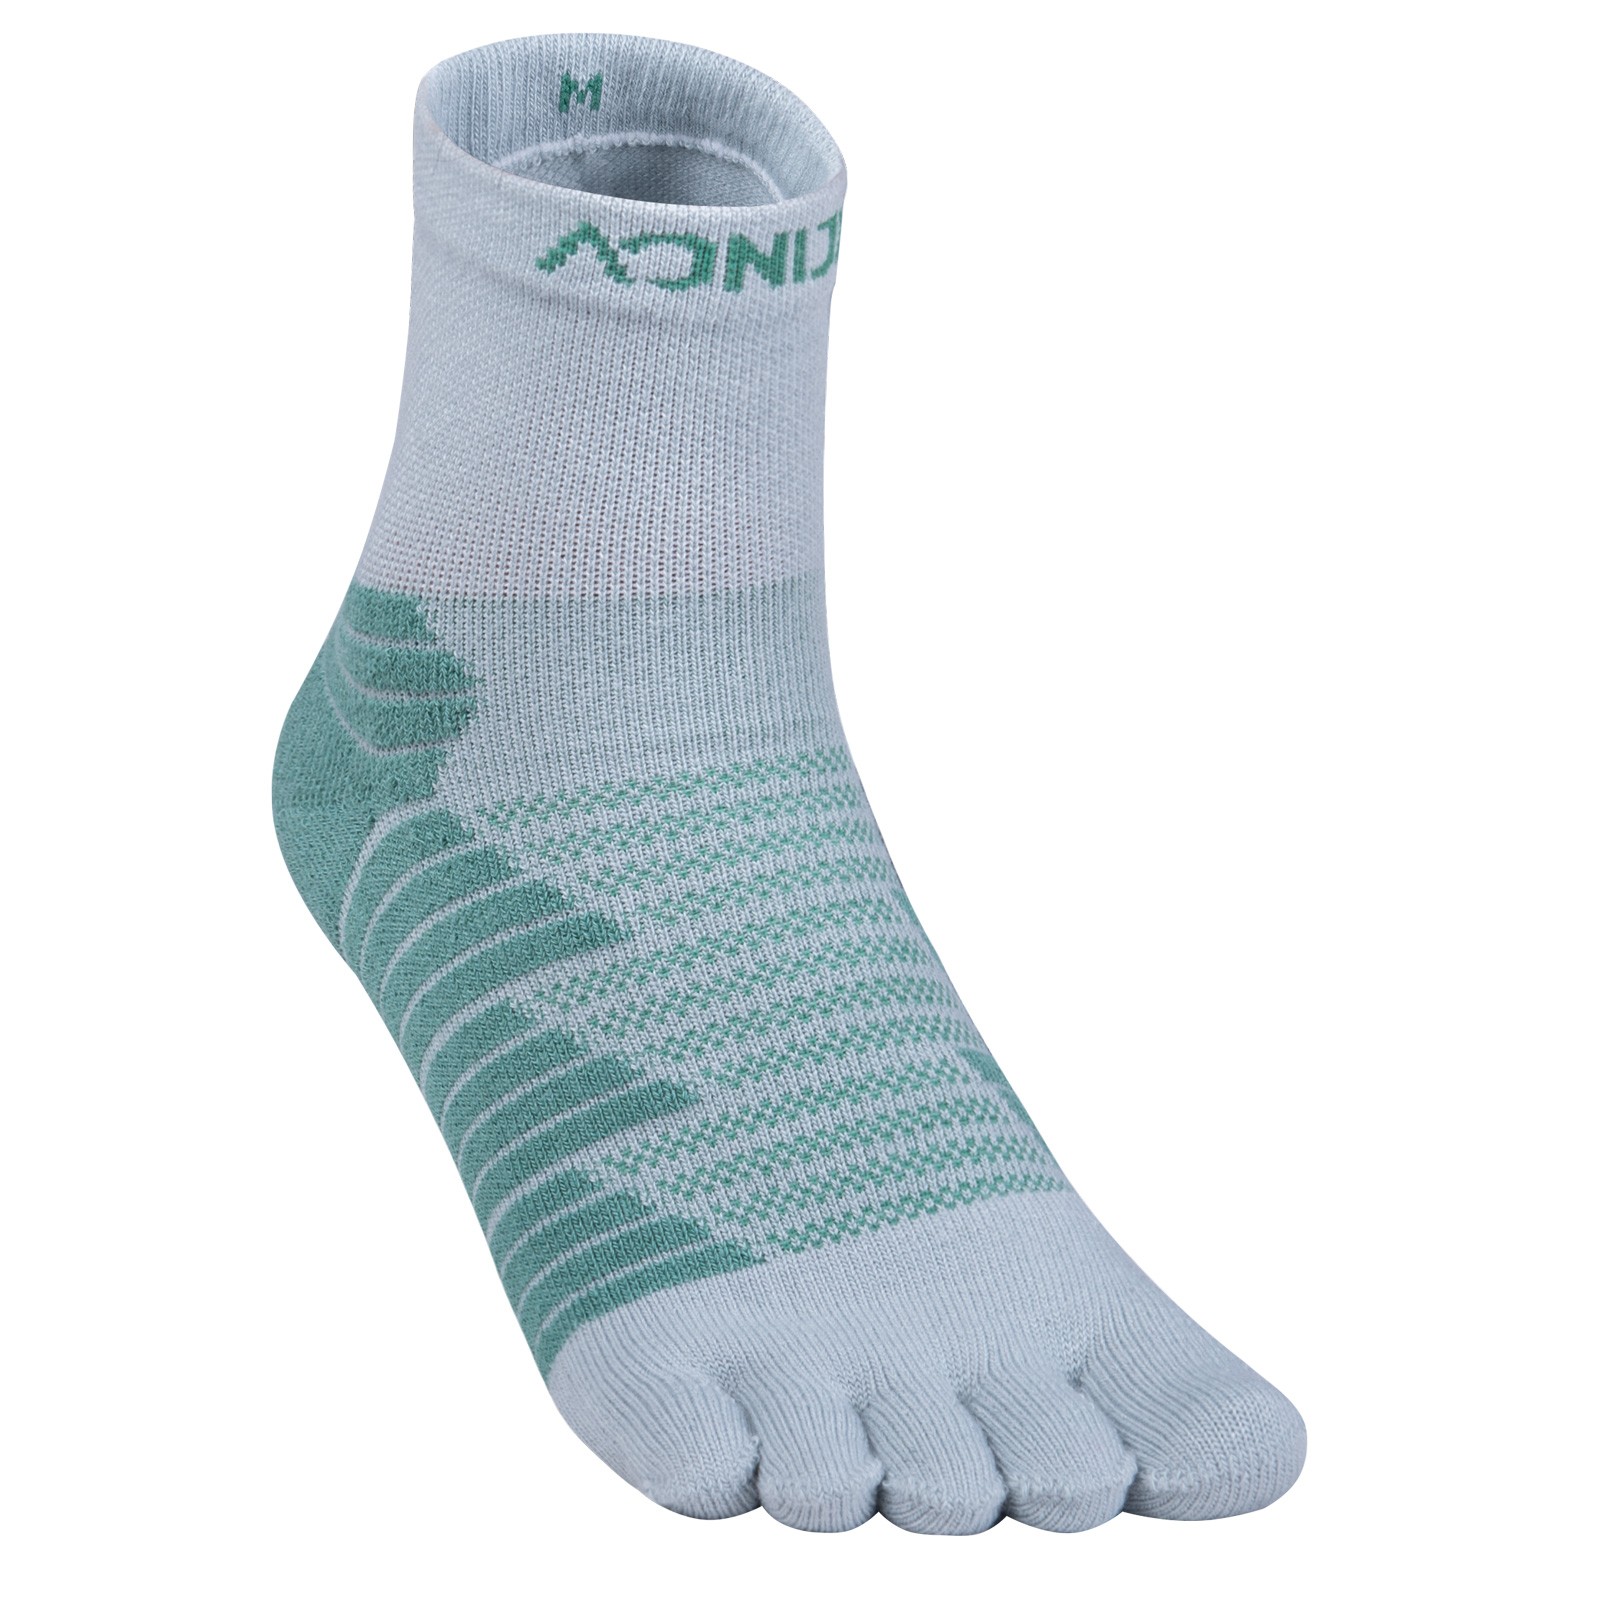 1 par de calcetines deportivos AONIJIE E4819 con cinco dedos, gruesos, cálidos, transpirables, para correr al aire libre, senderismo, calcetines de felpa de cinco dedos